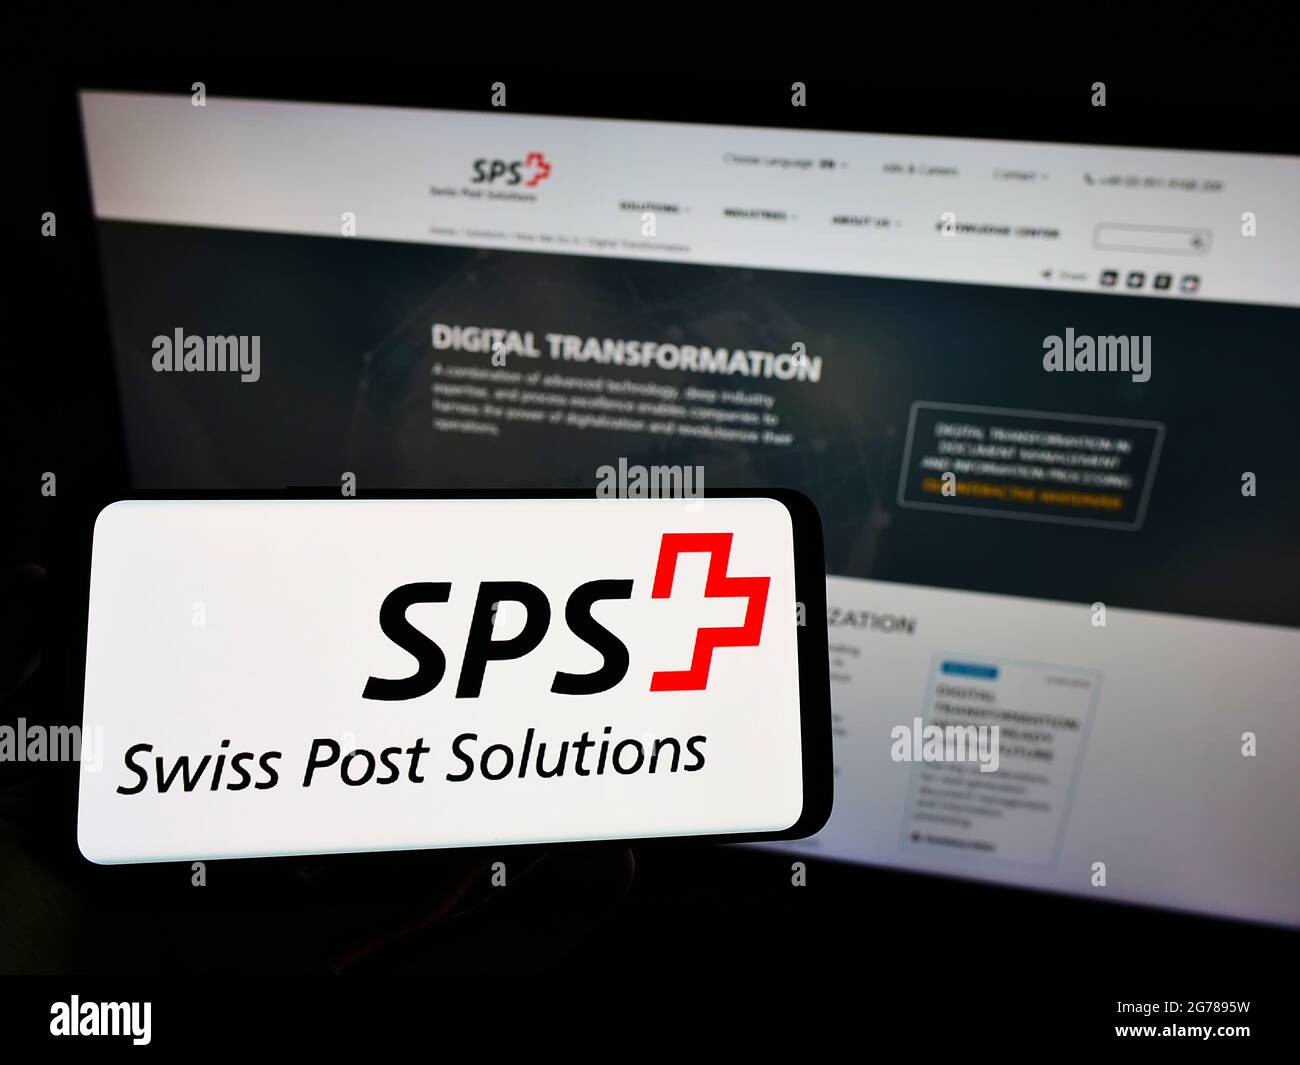 Persona che detiene il cellulare con il logo della società di gestione documenti Swiss Post Solutions (SPS) sullo schermo davanti alla pagina web. Mettere a fuoco il display del telefono. Foto Stock